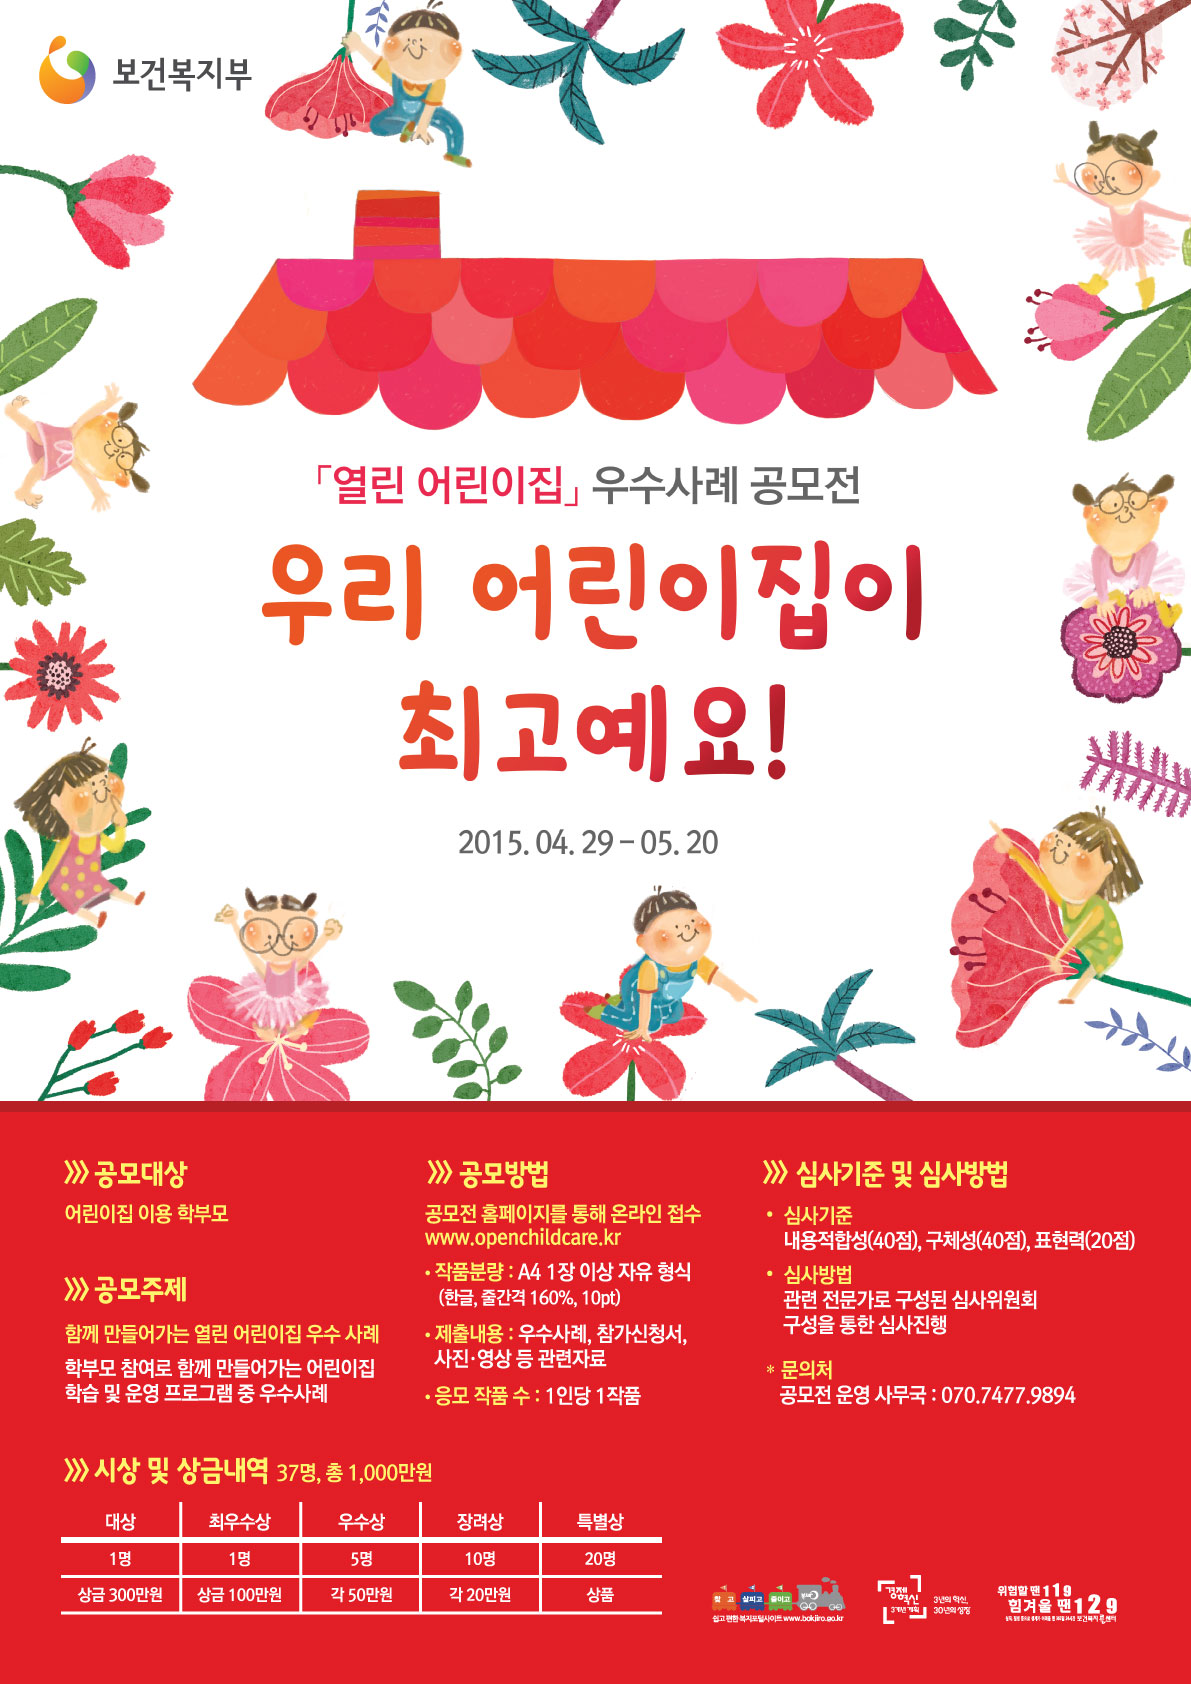 「열린어린이집 우수사례 공모전」개최 홍보 2